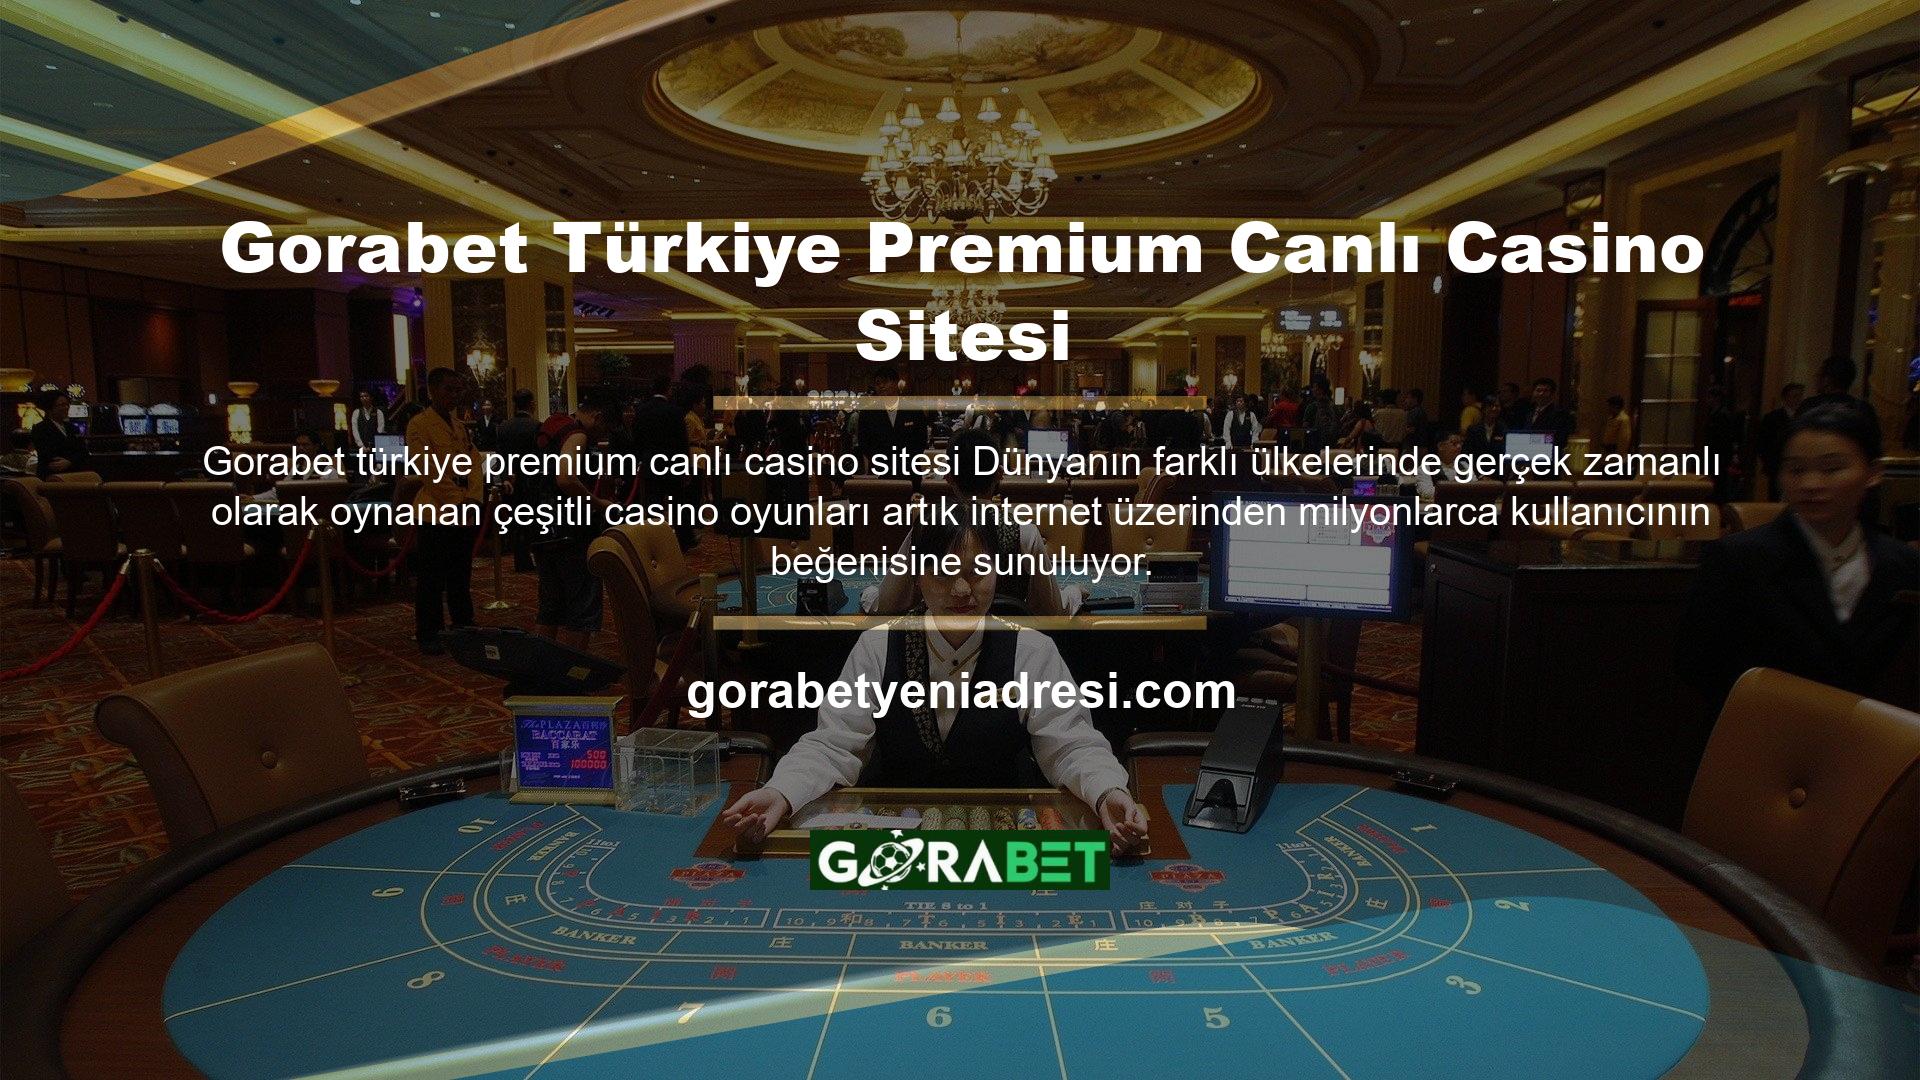 Büyük casino siteleri, entegre çevrimiçi lisanslama hizmetleri sunar ve Türkiye'de ve başka yerlerde kaliteli destek sunar